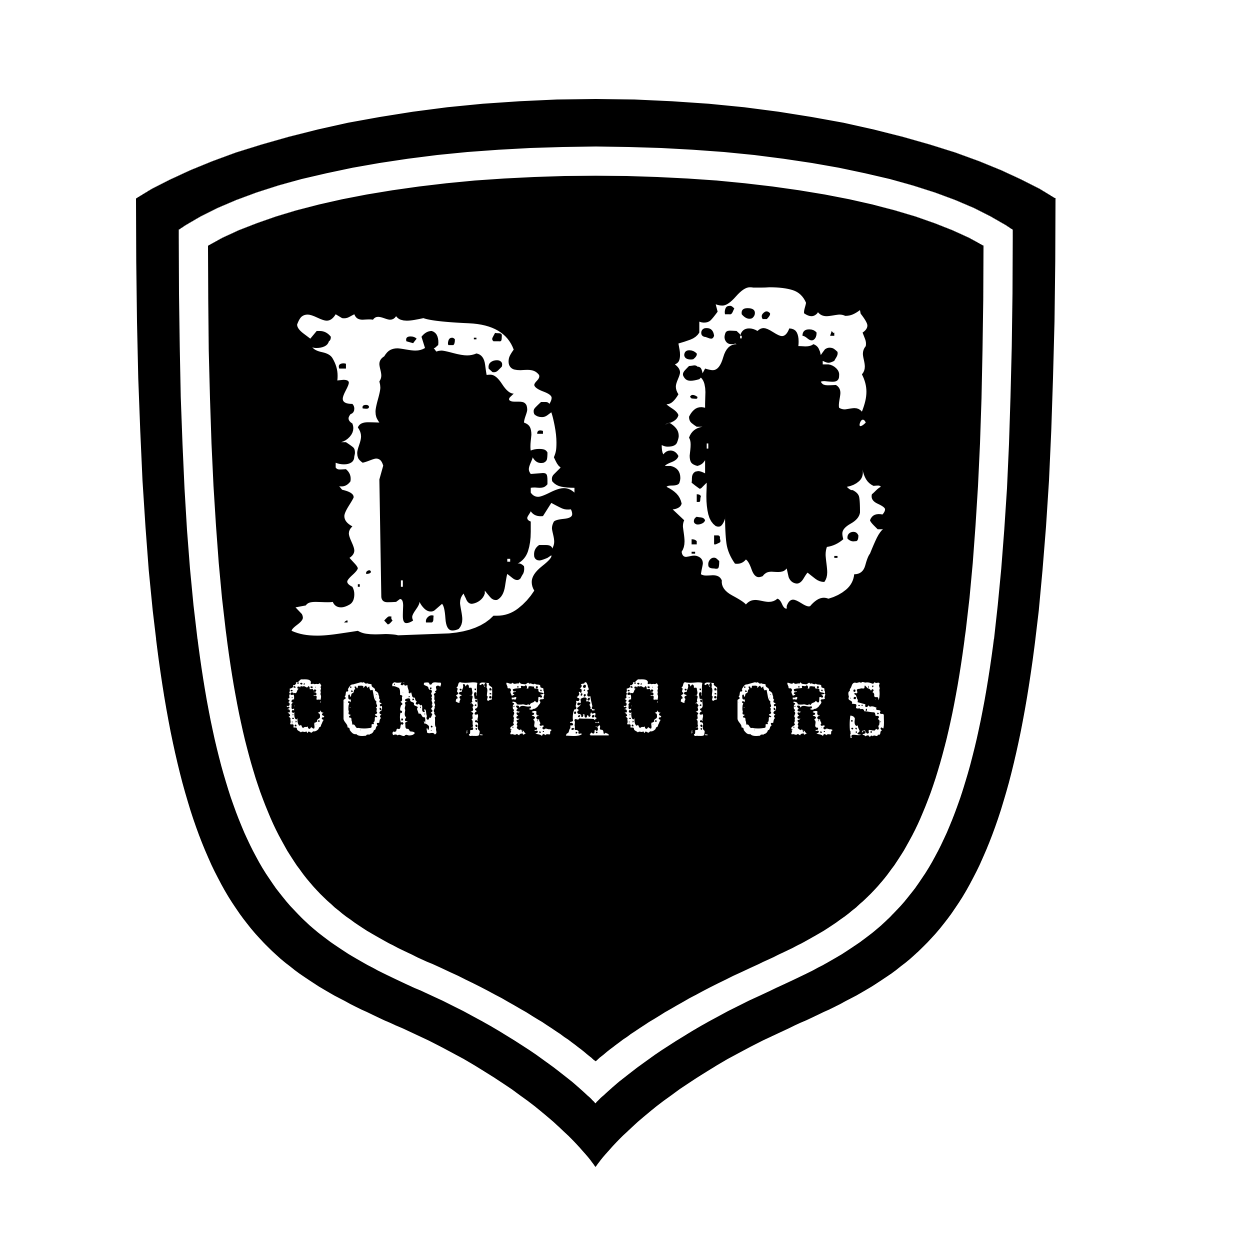 DC Contractors Toolbox Talk Meeting Record